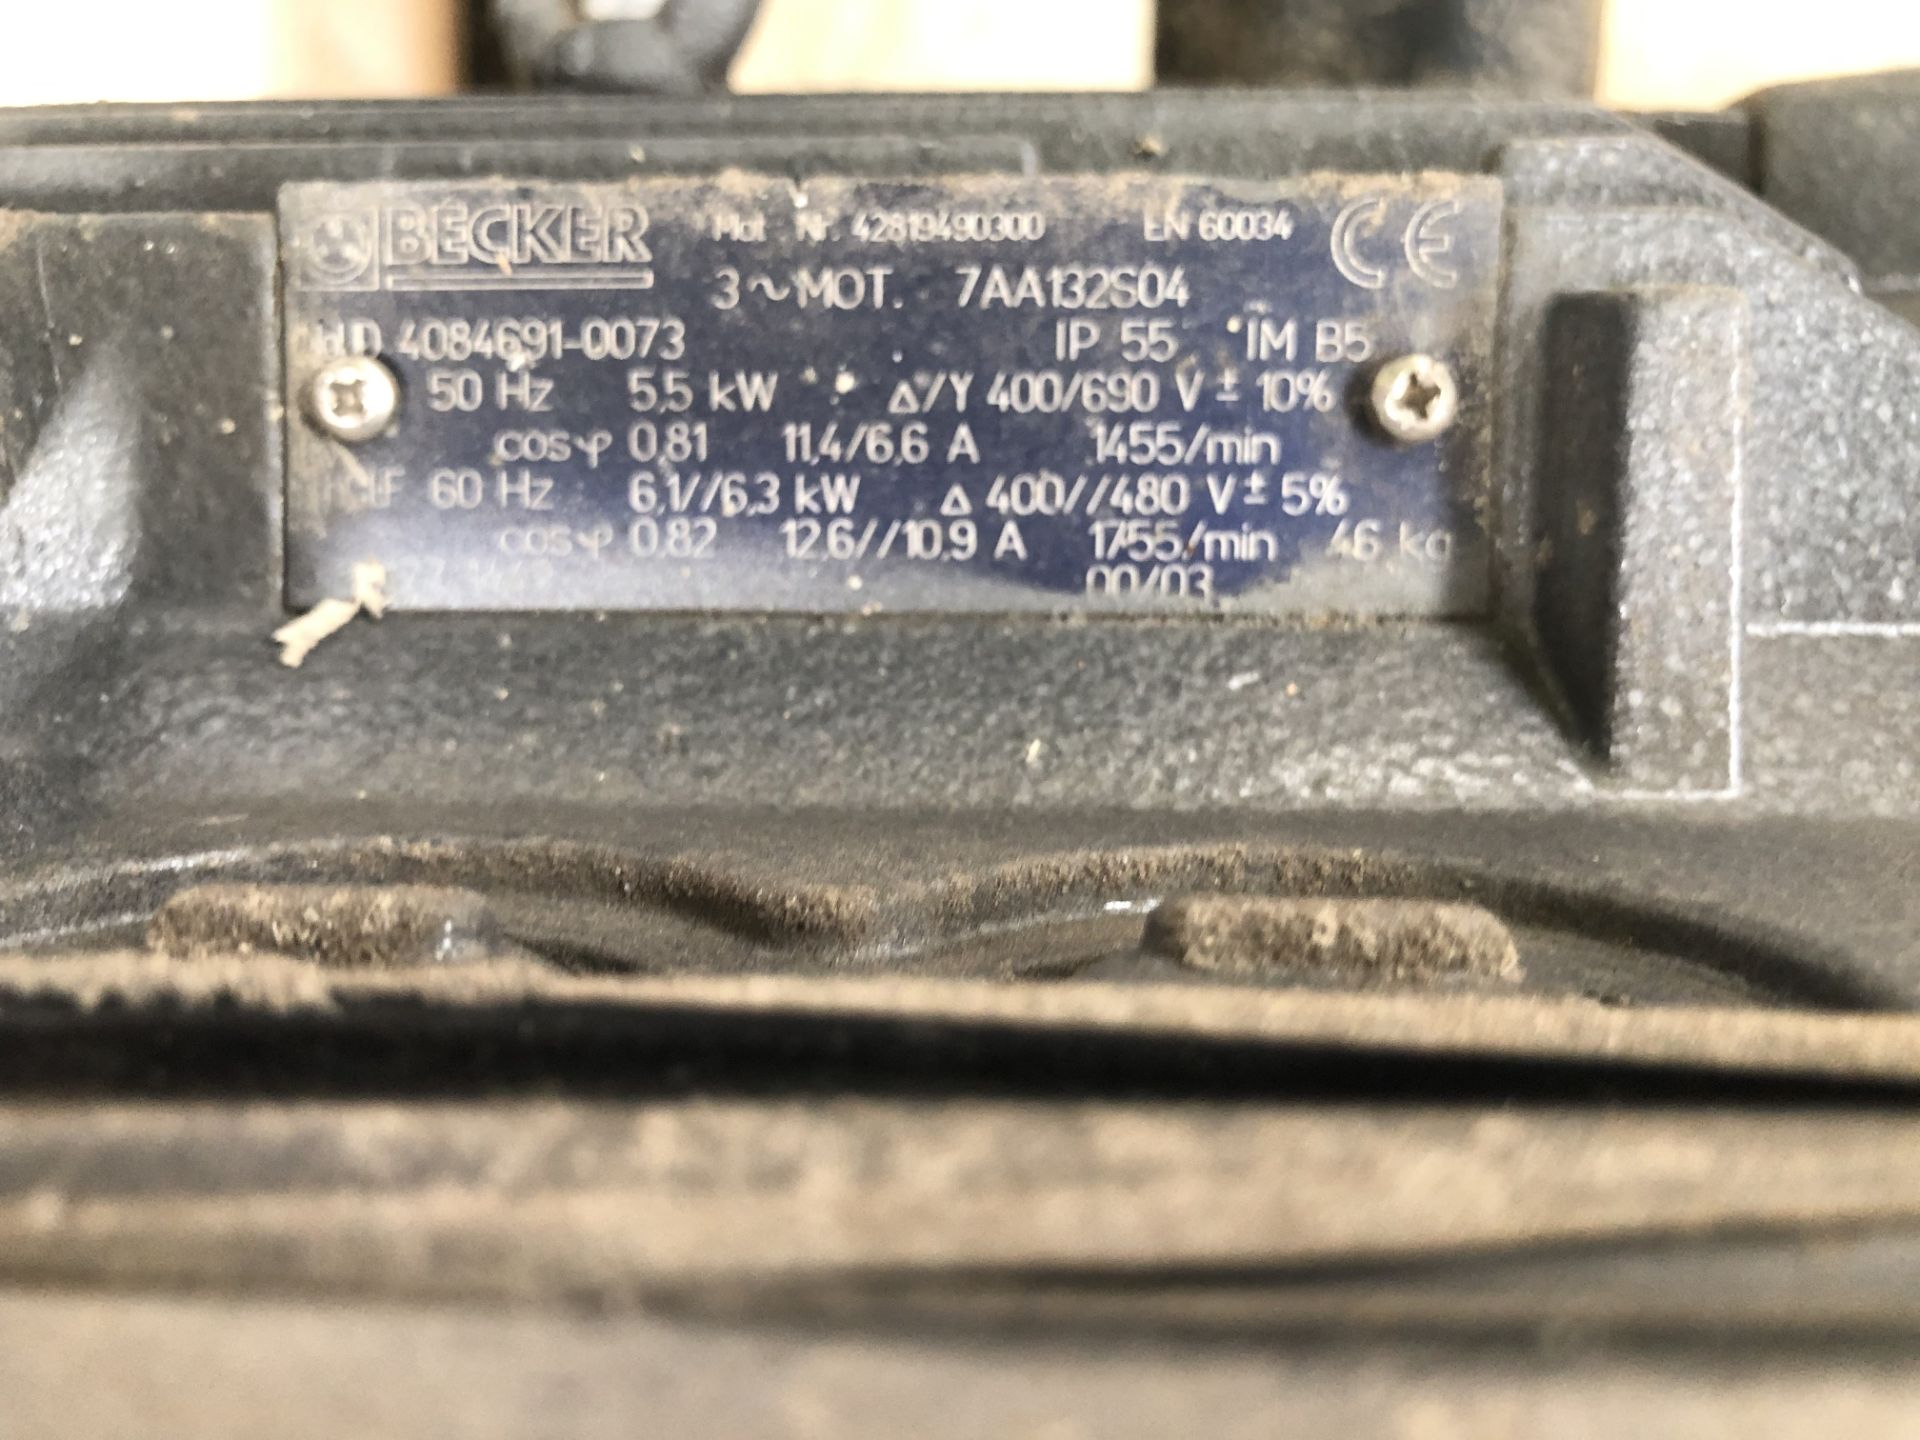 Becker U4.250SA/K Vacuum Pump, serial no. D 163762 - Image 4 of 4